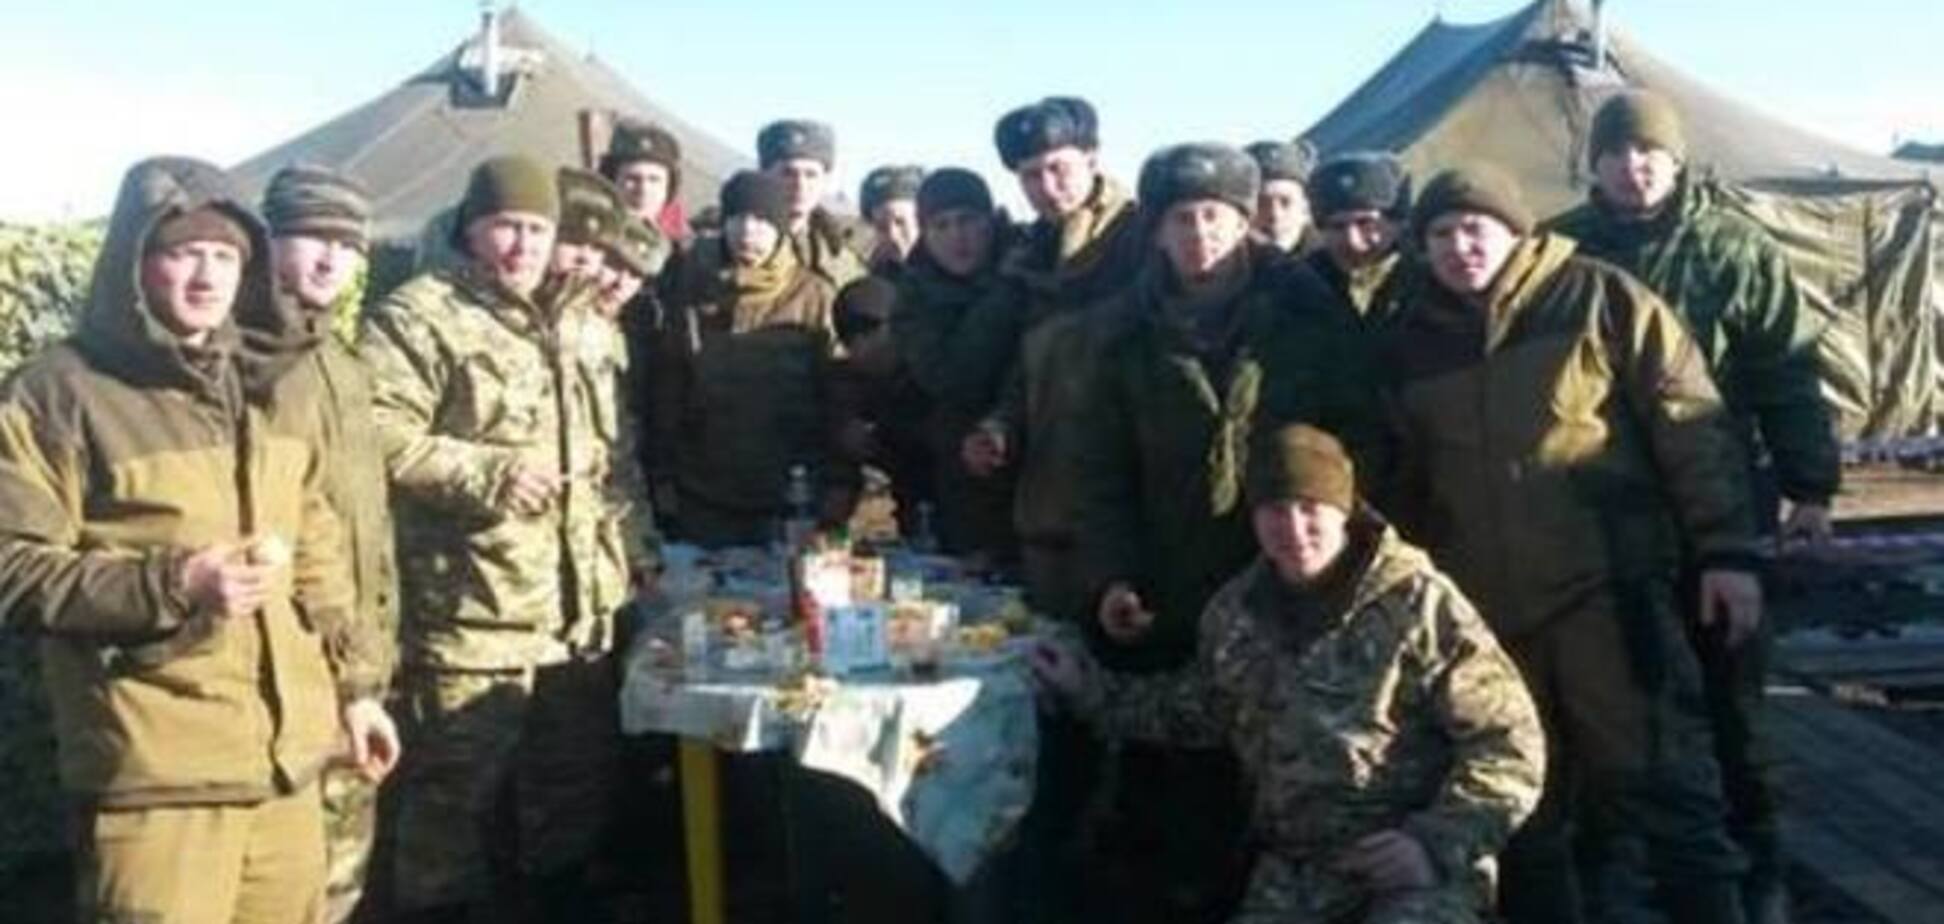 Російські десантники оплакують своїх товаришів по службі, загиблих в зоні АТО: фото- і відеофакти